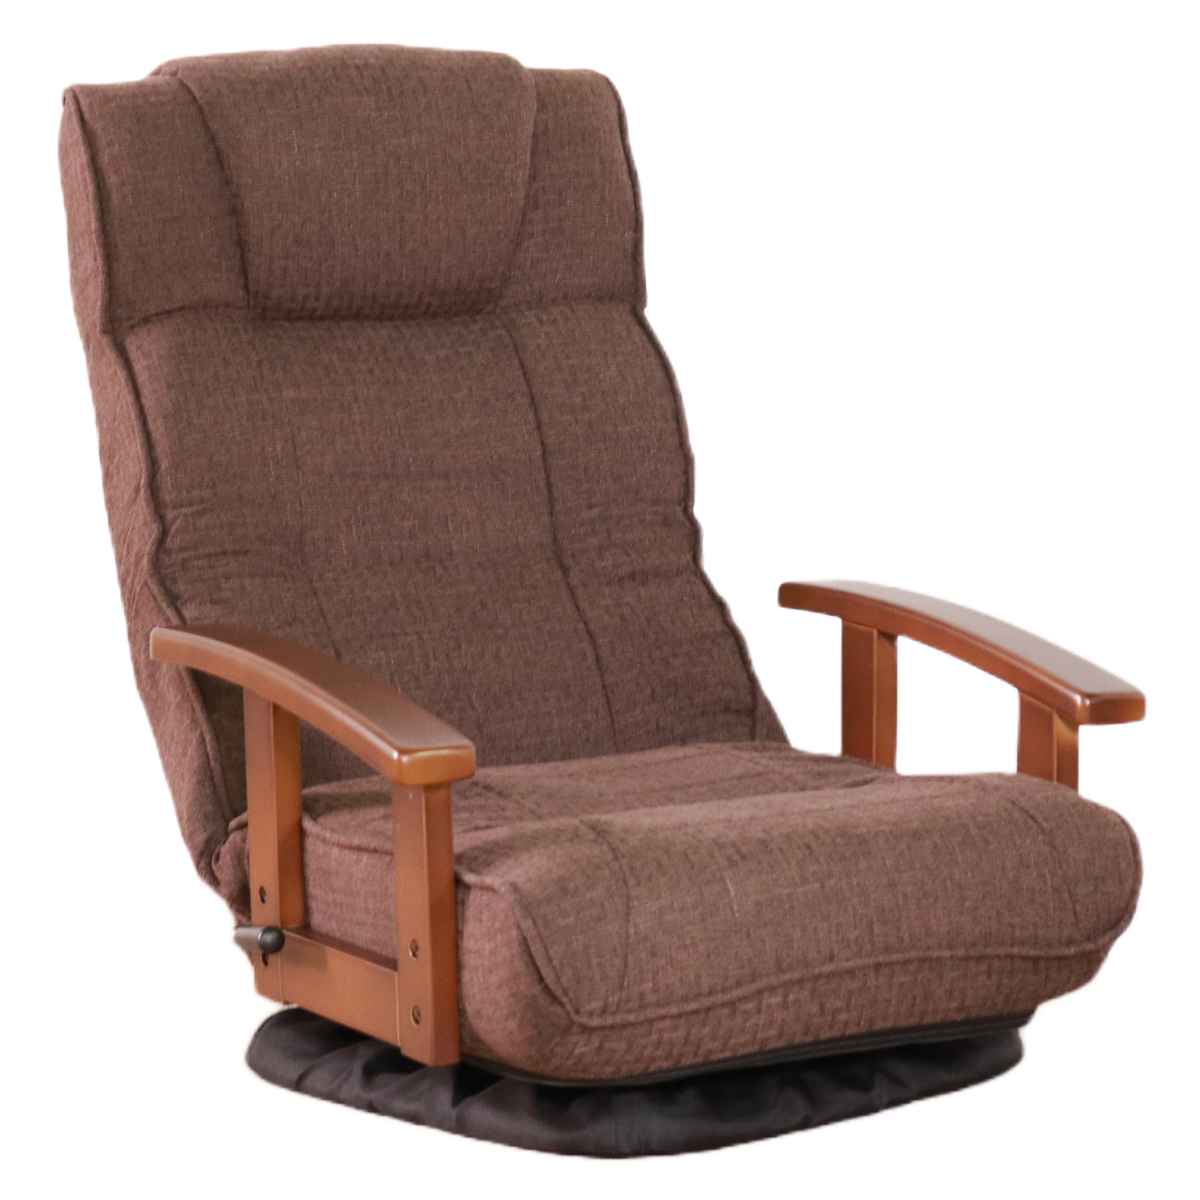 商品サイズ74×73×45cm回転式座椅子 肘掛け ハイバック リクライニング 1人掛けソファー おしゃれ